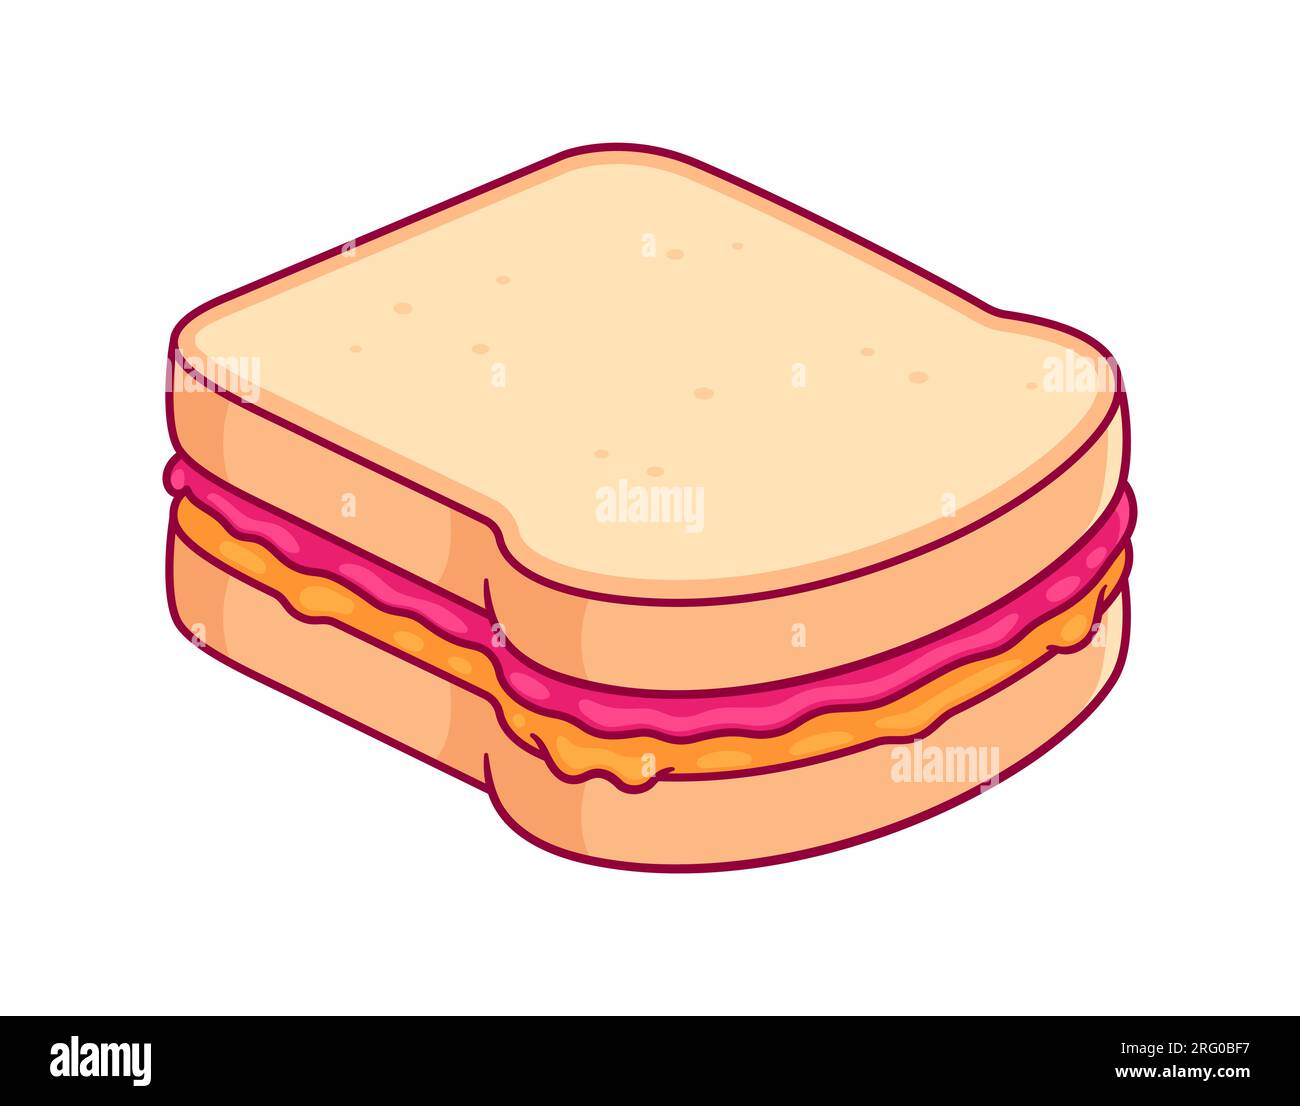 Disegno sandwich PBJ. Pane tostato bianco con burro di arachidi e marmellata di lamponi. Illustrazione vettoriale dei cartoni animati. Illustrazione Vettoriale